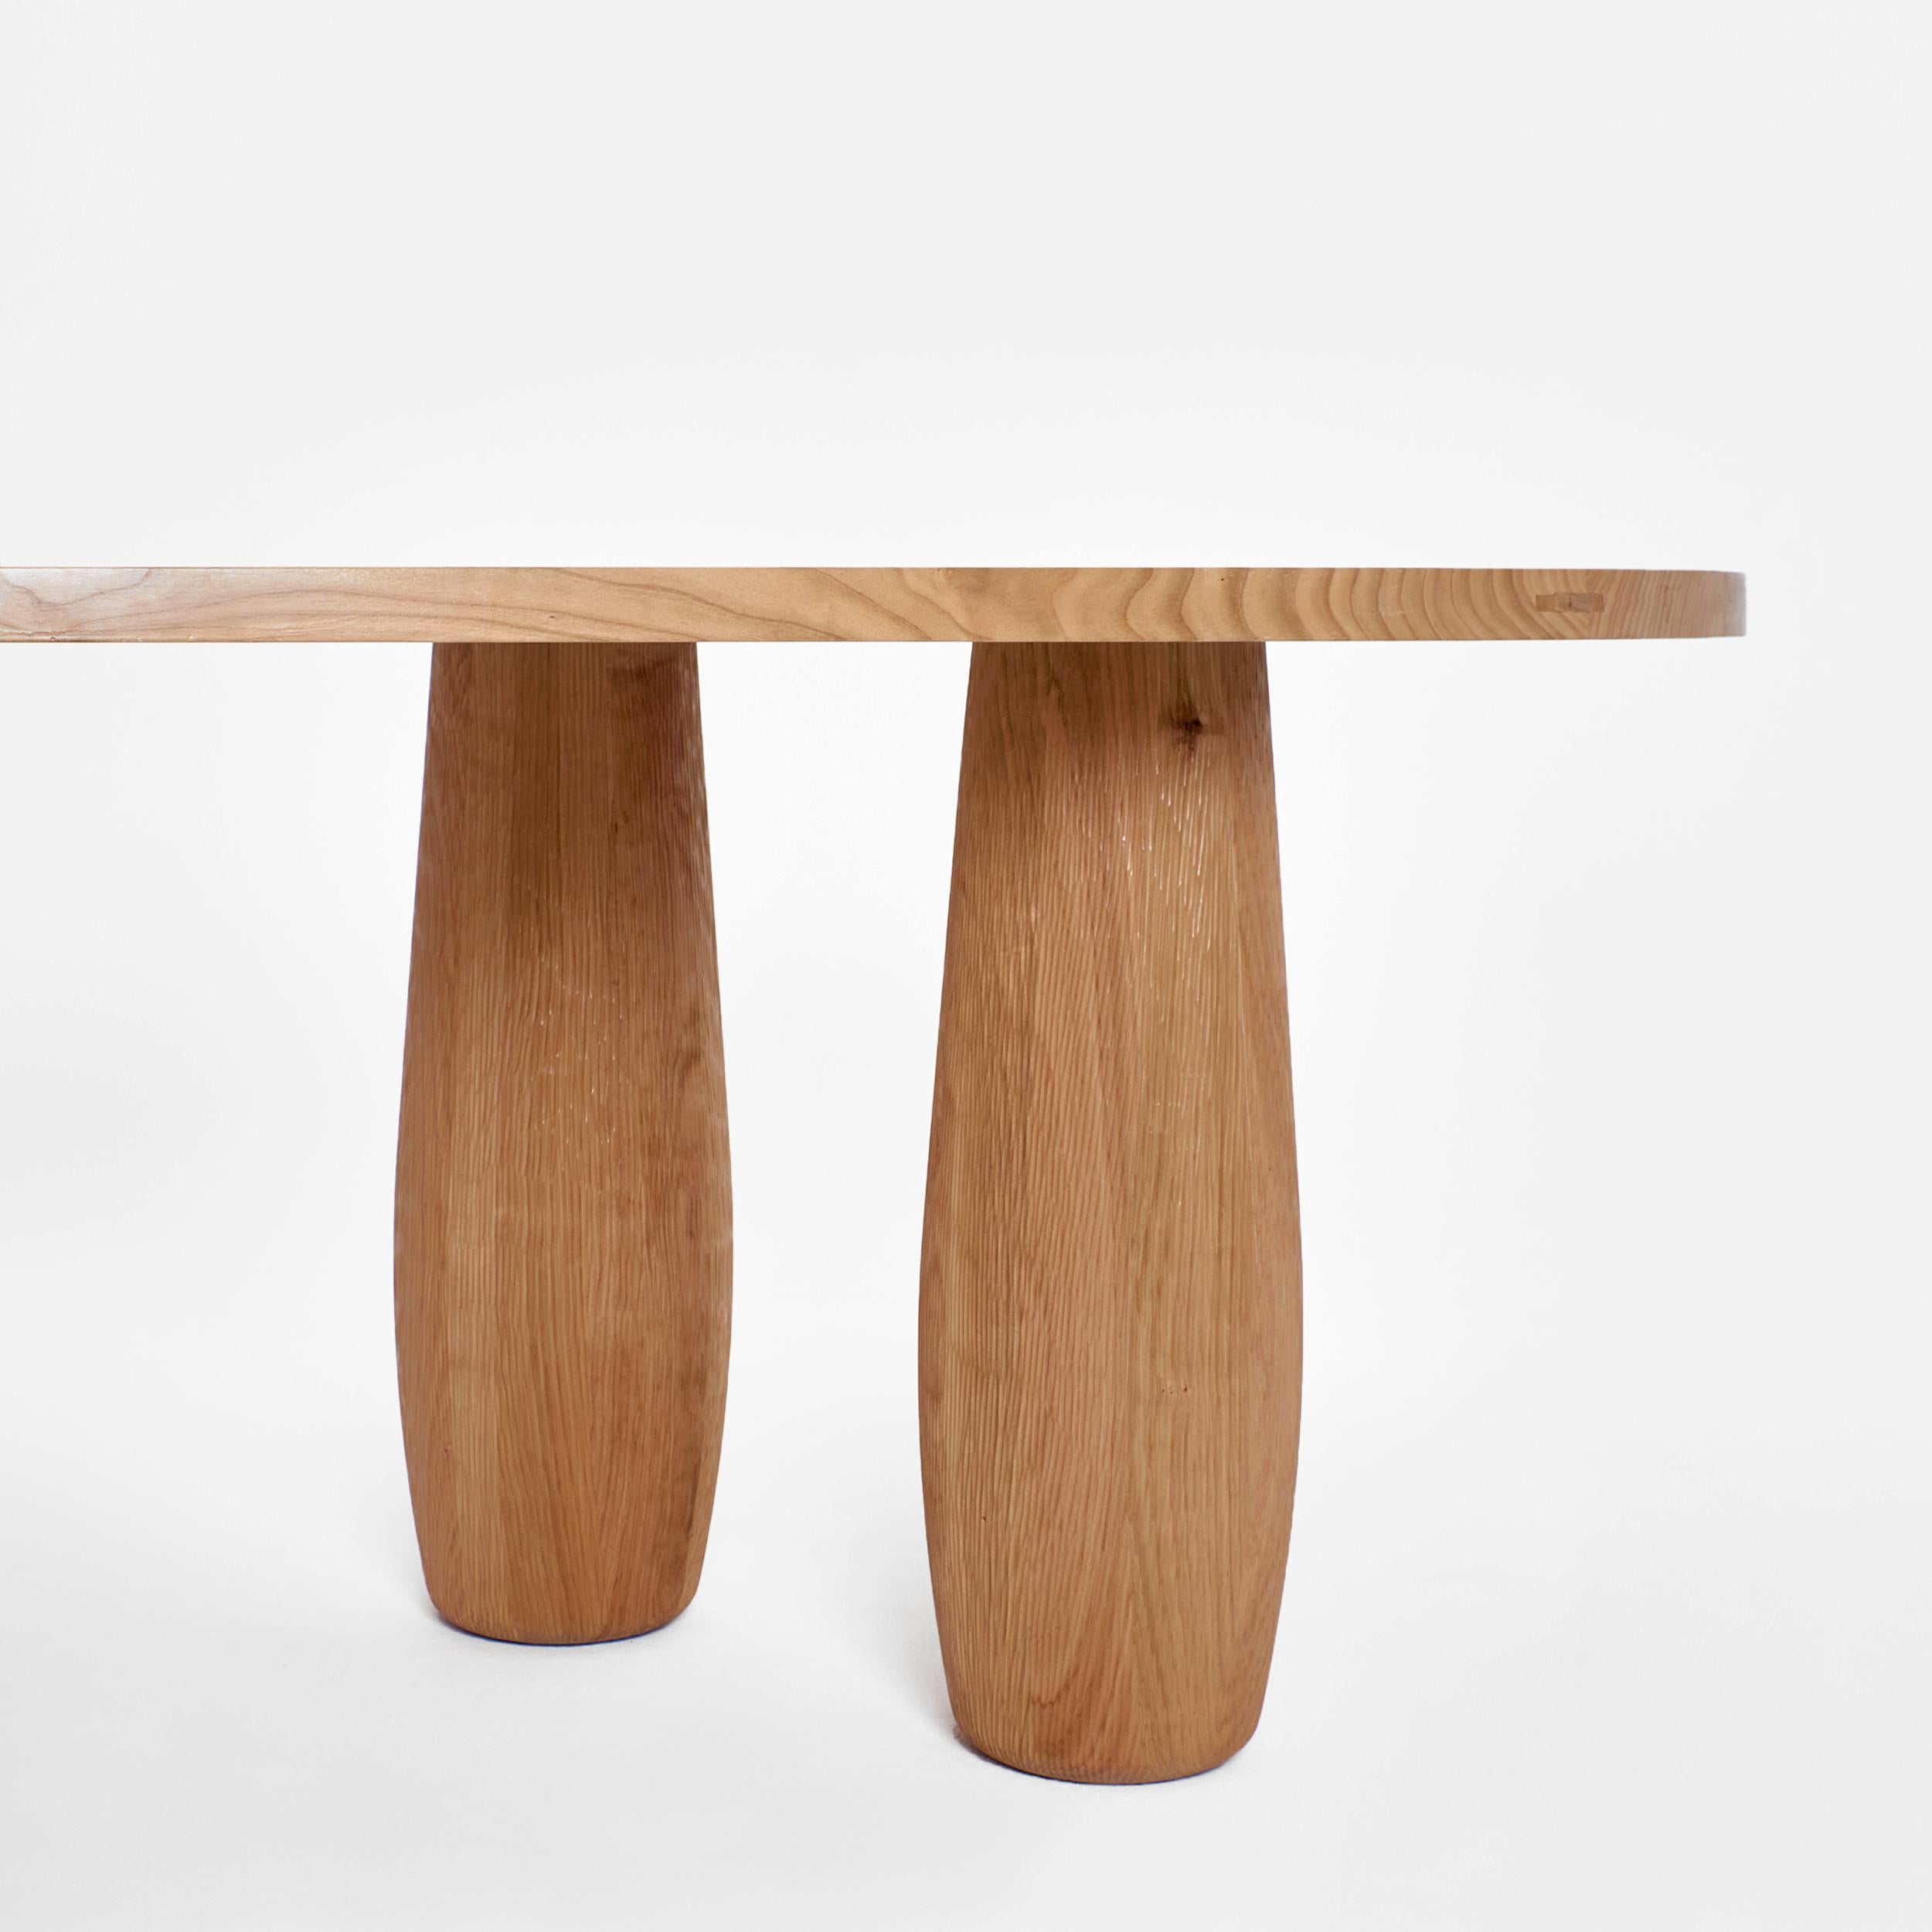 À table - Esstisch.
Eine asymmetrische Tischplatte, die auf fünf ovalen Beinen steht. Jedes Segment ist aus einem einzelnen Stück Kirschholz geschnitzt, um den natürlichen Fluss und die Textur des Holzes mit handgeschnitzten Details zur Geltung zu